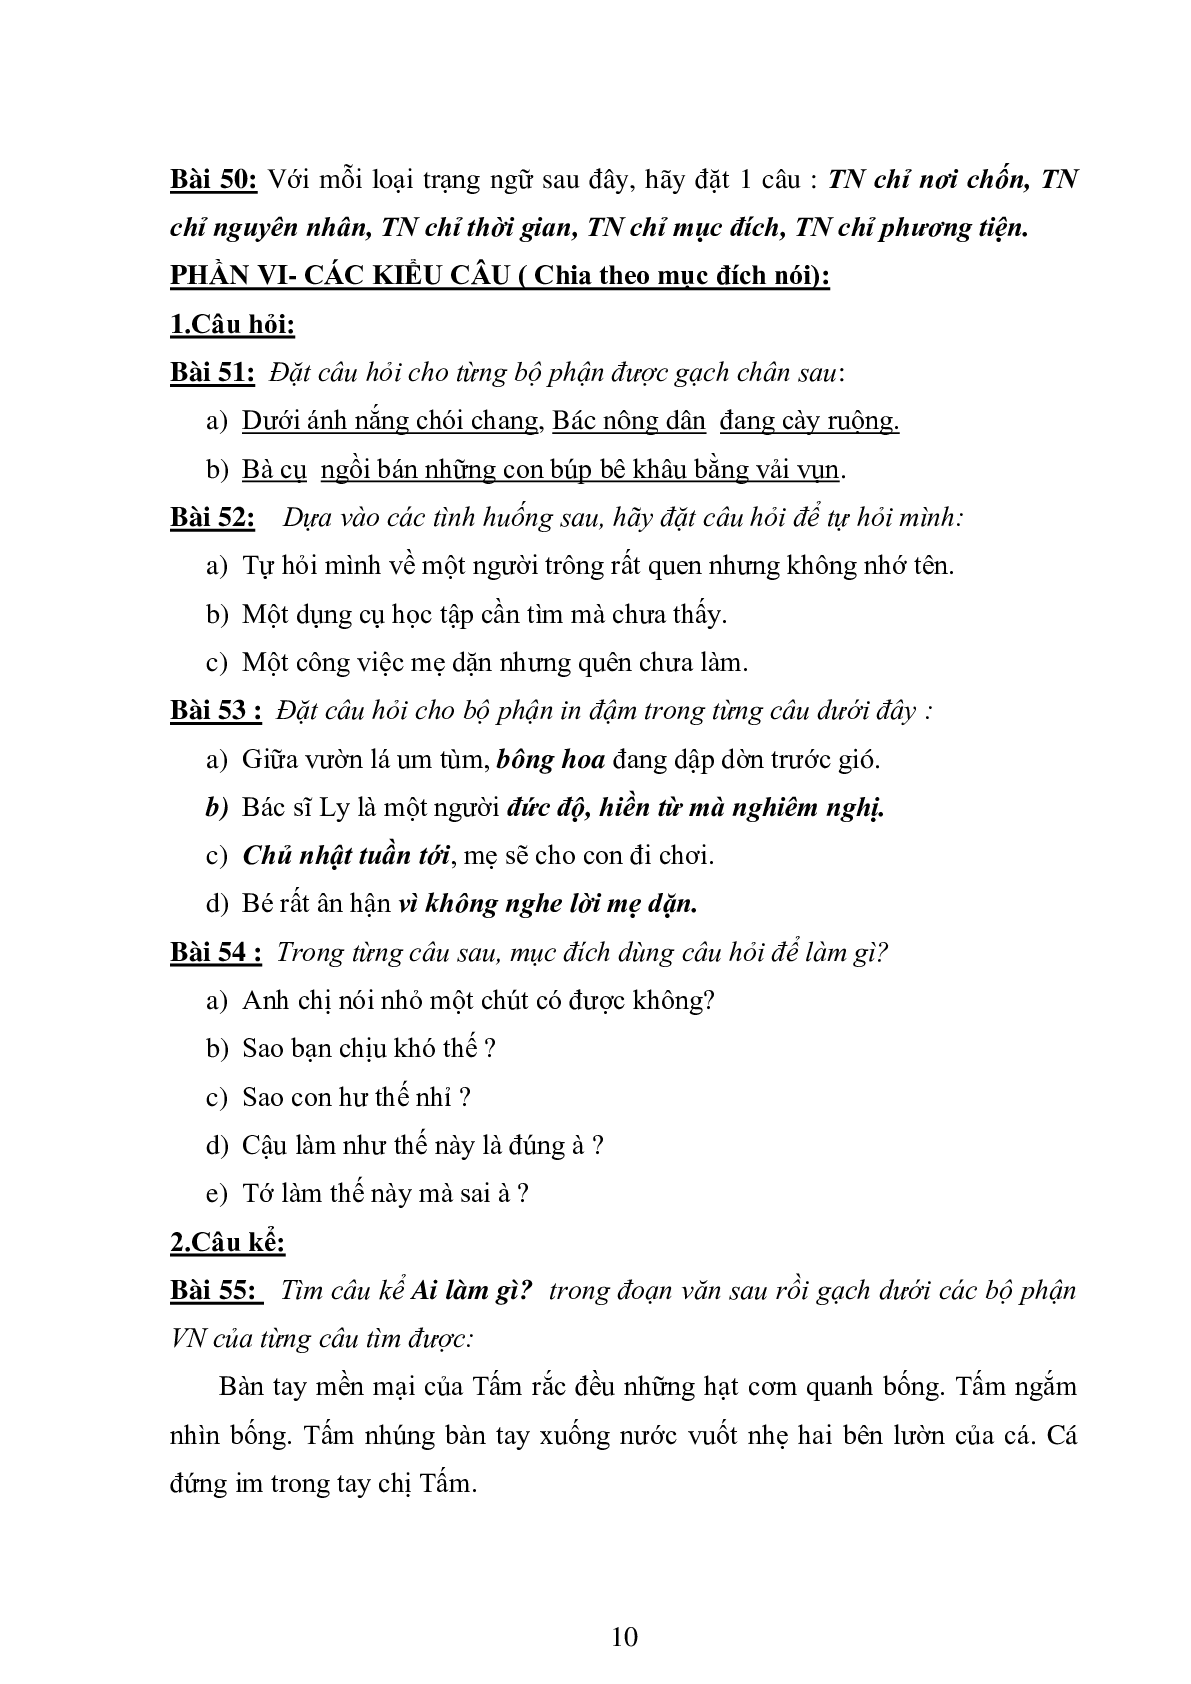 74 bài tập luyện từ và câu môn Tiếng Việt lớp 4 (trang 10)